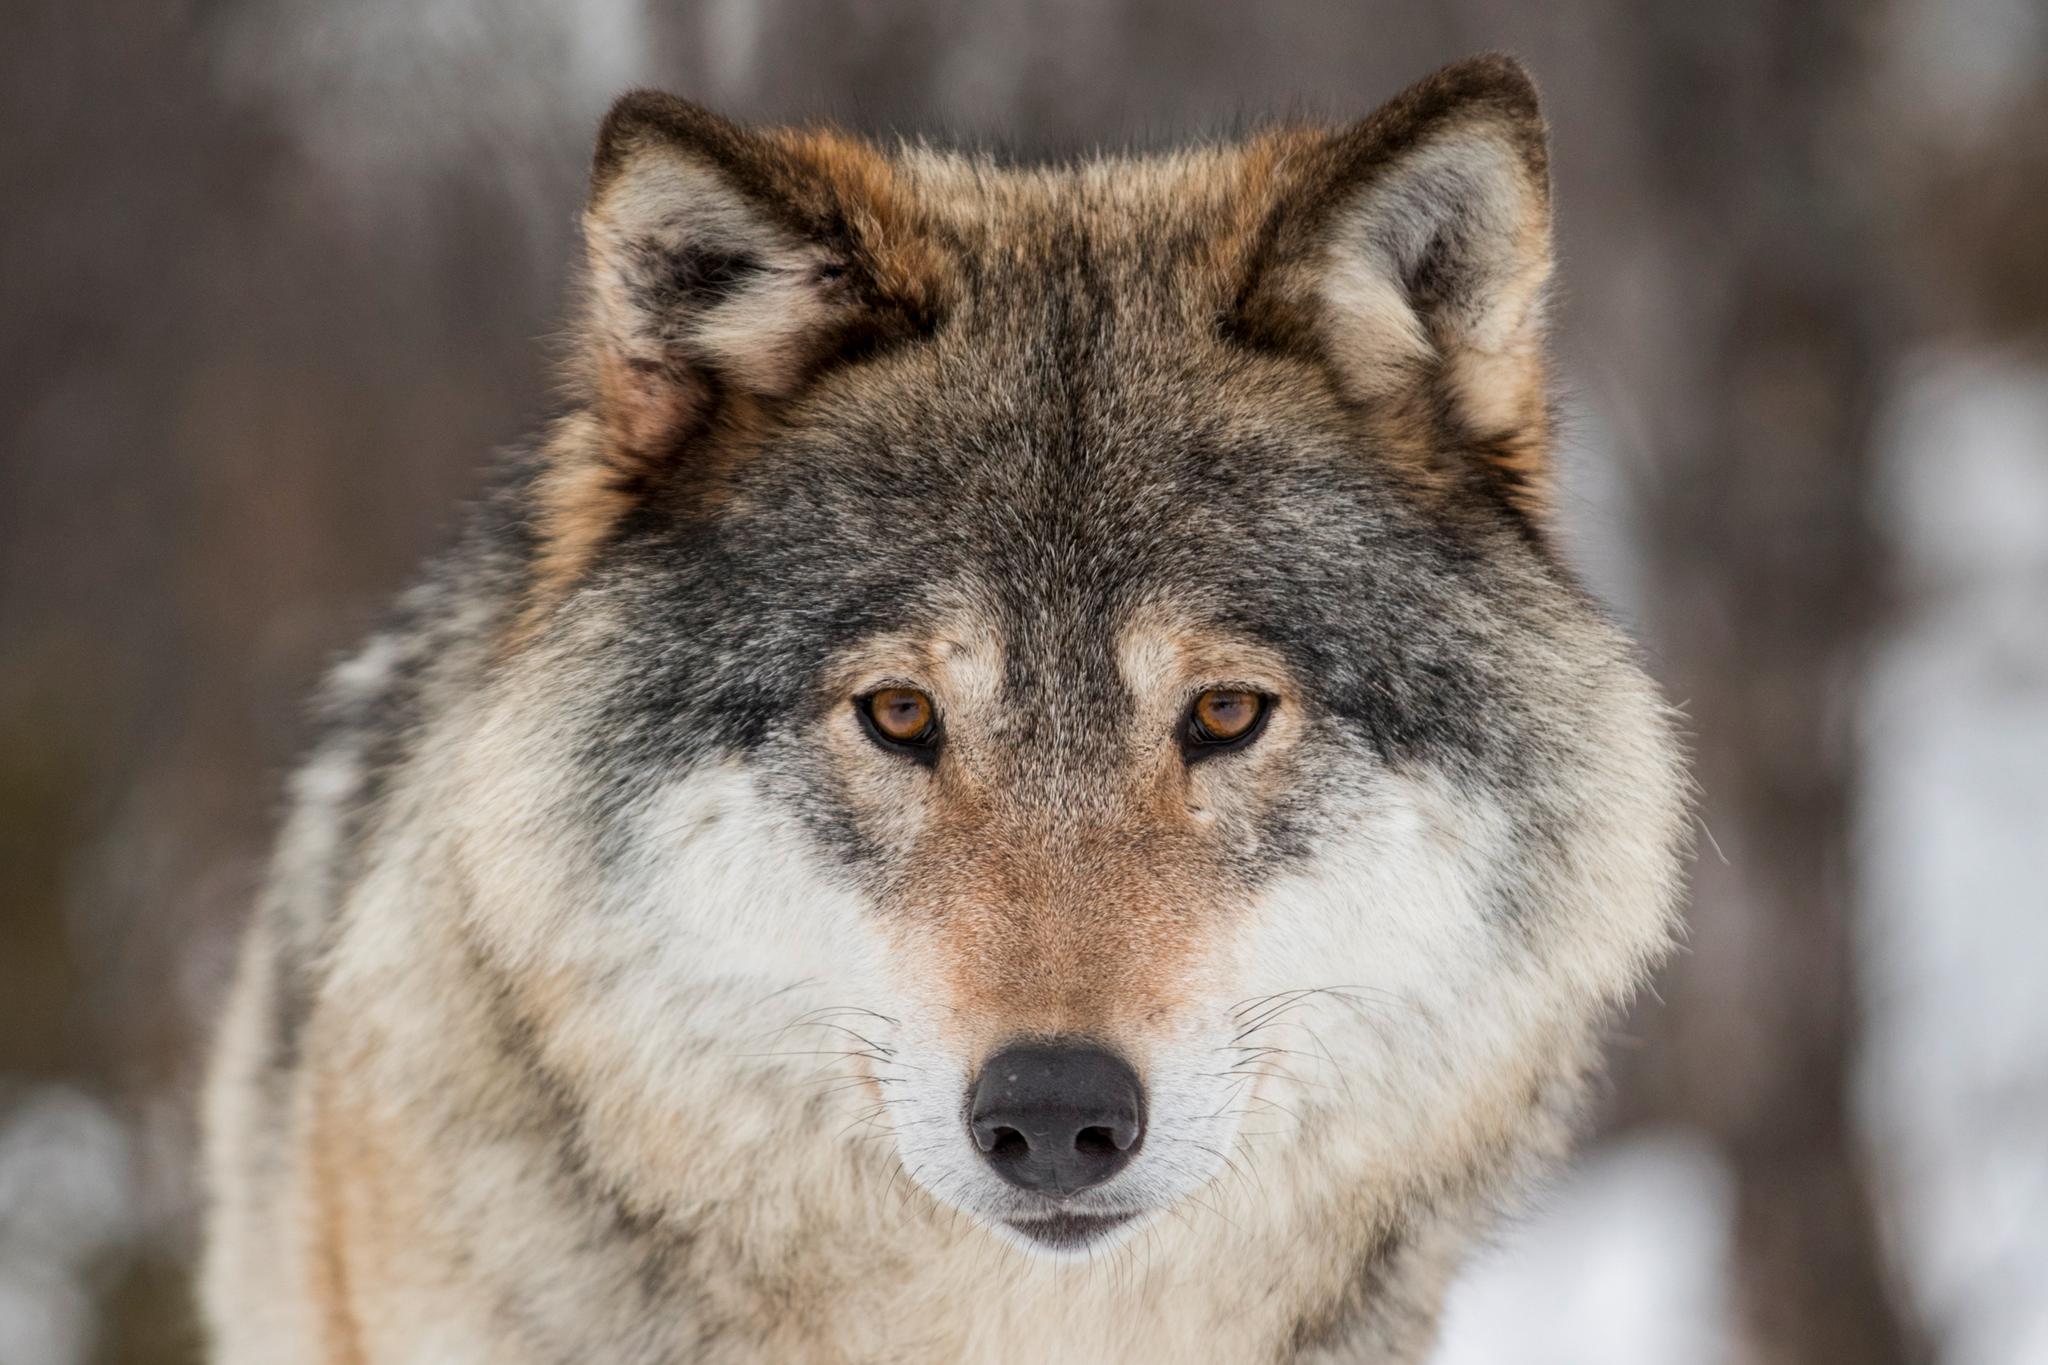 Den foreløpig siste av totalt 16 ulver i de to revirene Osdalsflokken og Julussaflokken ble skutt fredag morgen. Jaktlaget mener imidlertid at det kan være flere dyr igjen i de to flokkene og nå må myndighetene vurdere å utvide jakten. Illustrasjonsfoto: Heiko Junge / NTB scanpix